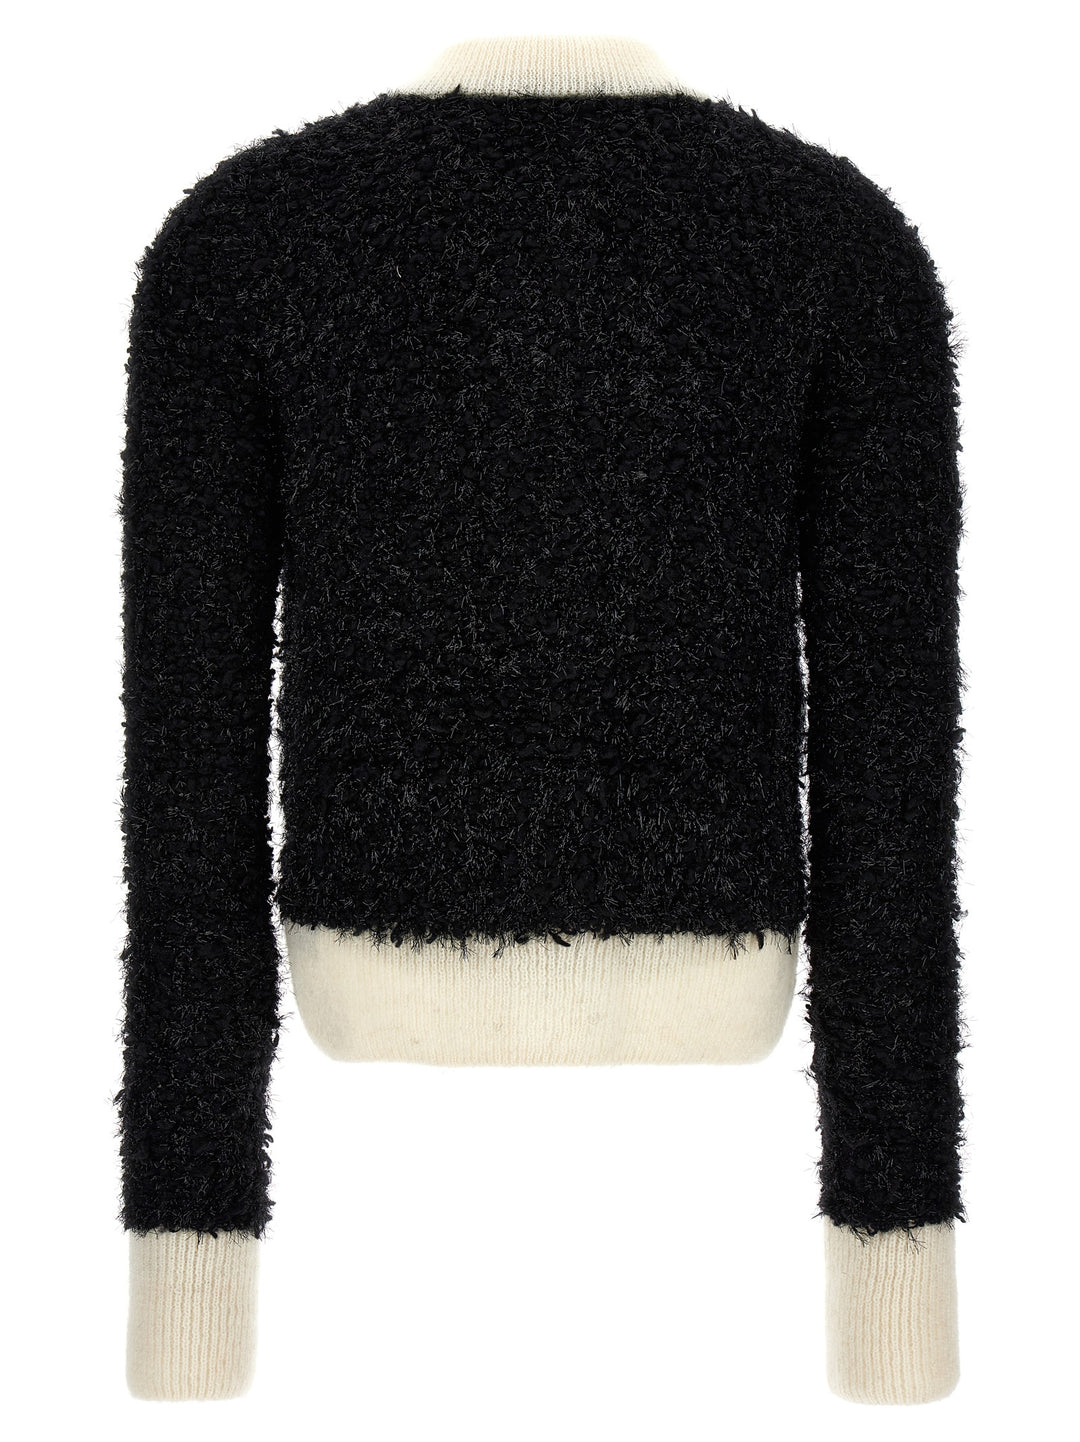 Furry Tweed Cardigan Maglioni Bianco/Nero